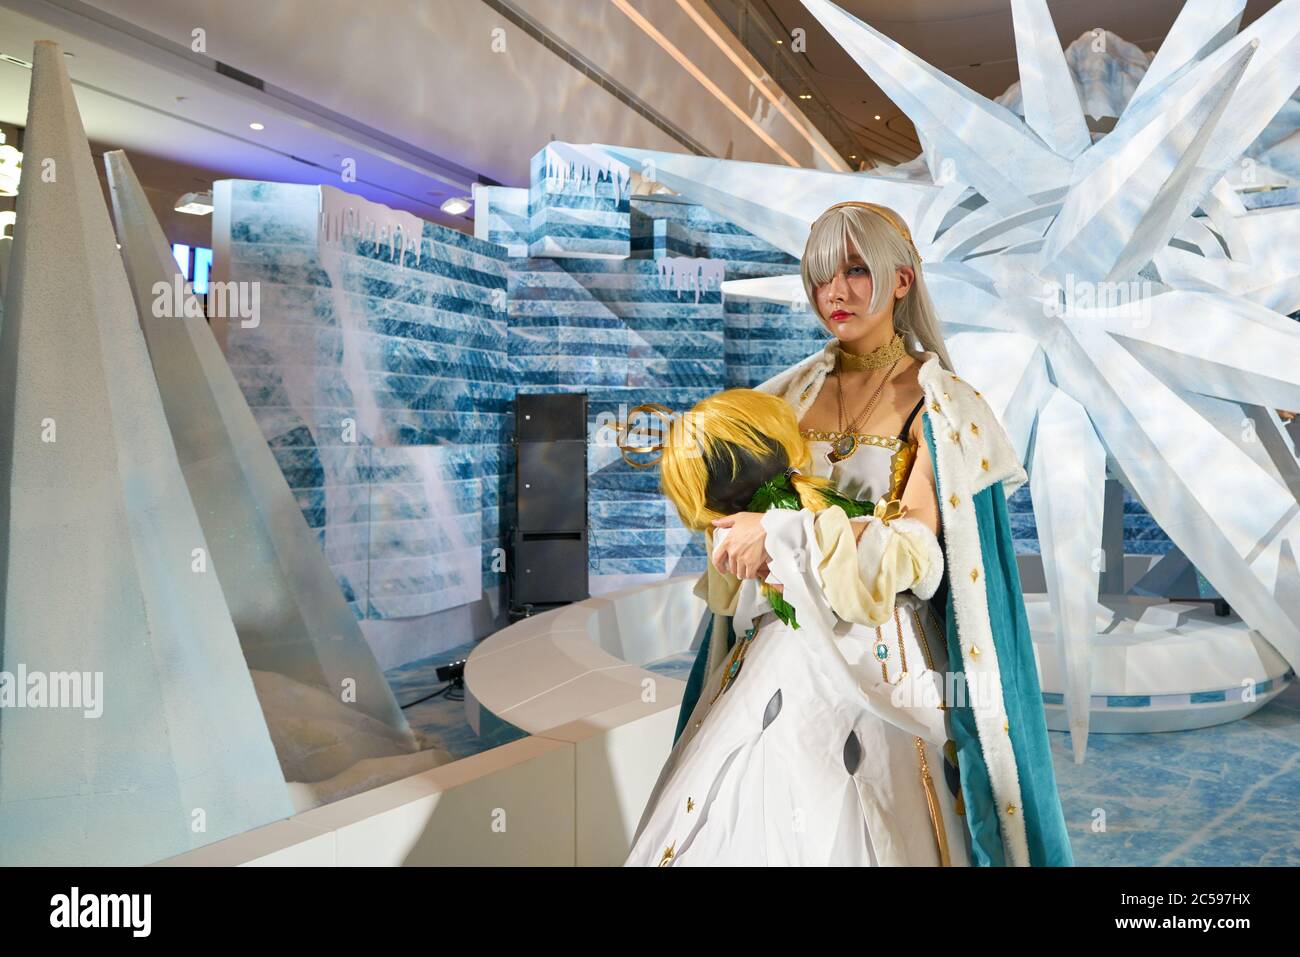 SHENZHEN, CINA - 20 APRILE 2019: cosplay del personaggio del fate/Grand Order "Anastasia Nikolaevna Romanova" al Sony Expo 2019 di Shenzhen, Cina. Foto Stock